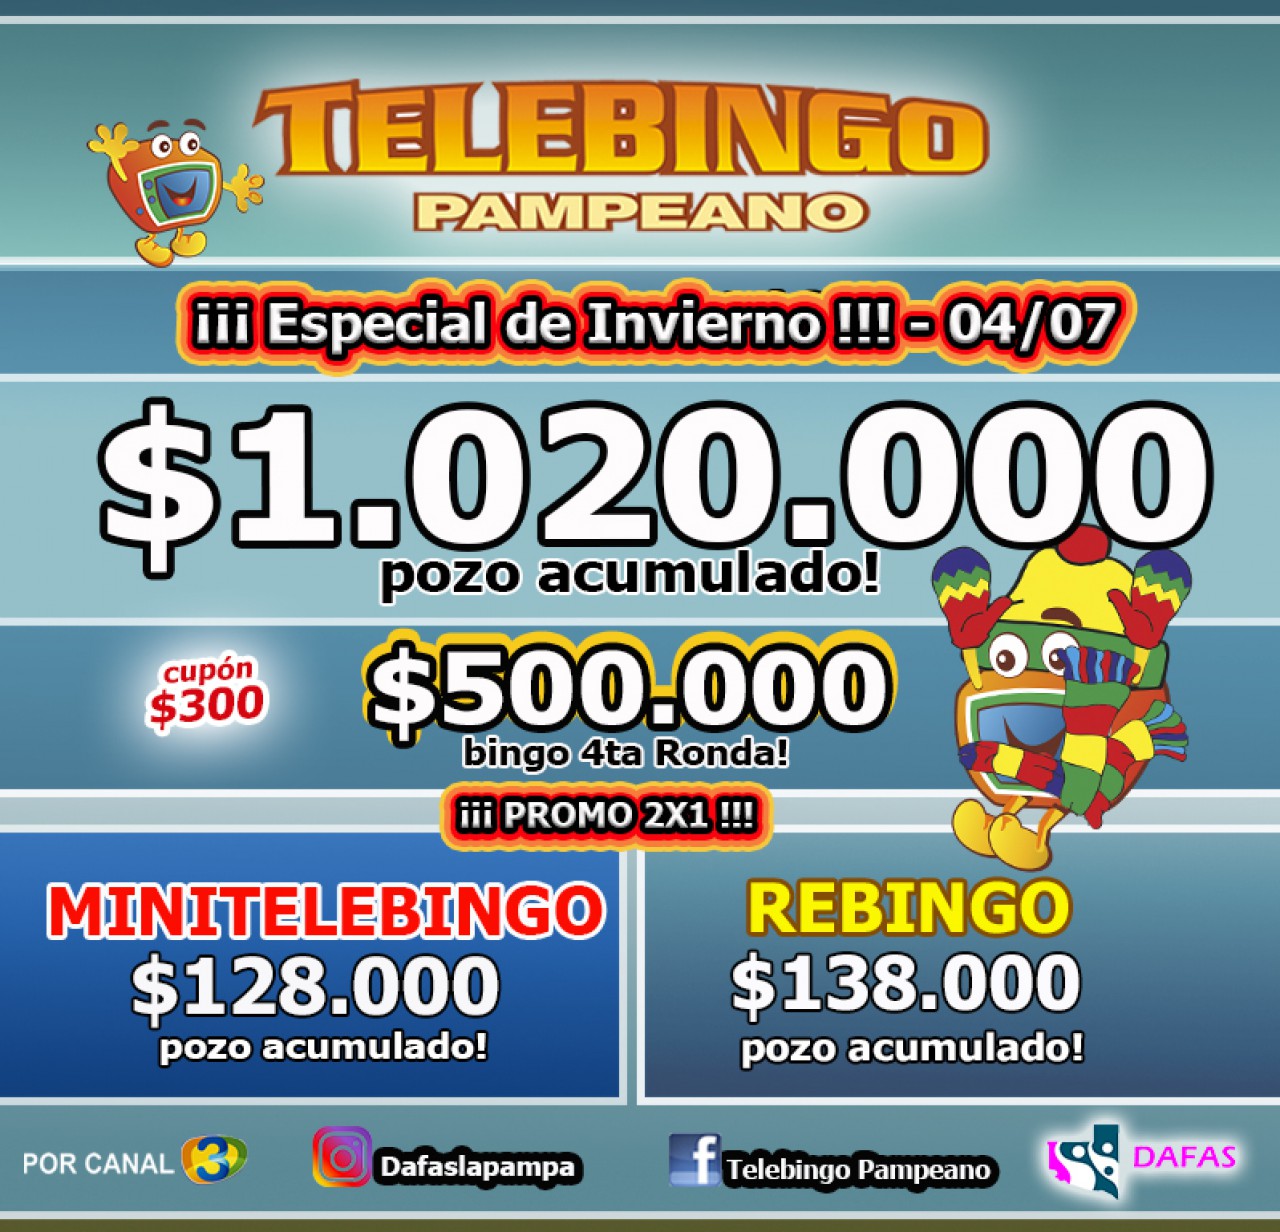 Telebingo Pampeano sortea el Especial de Invierno: Habrá un pozo superior al millón de pesos